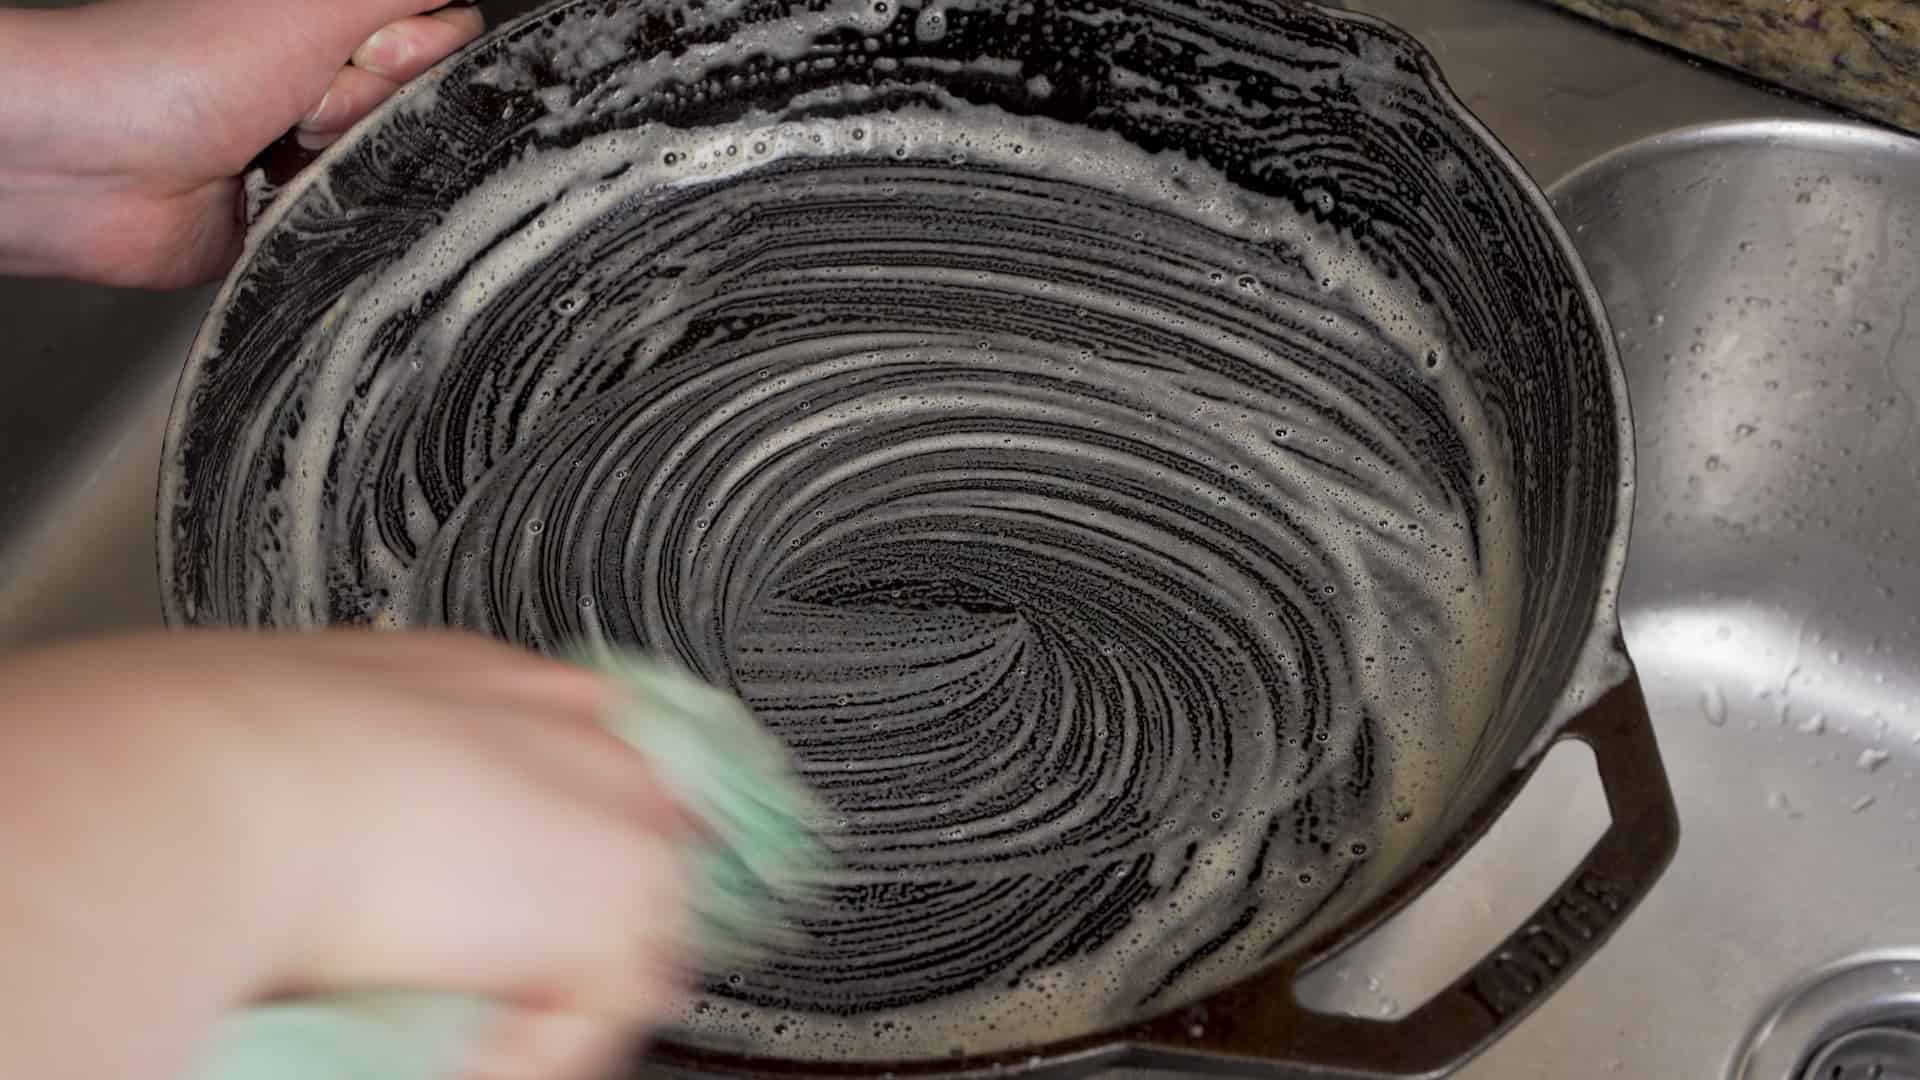 scrubbing soap into a cast iron skillet